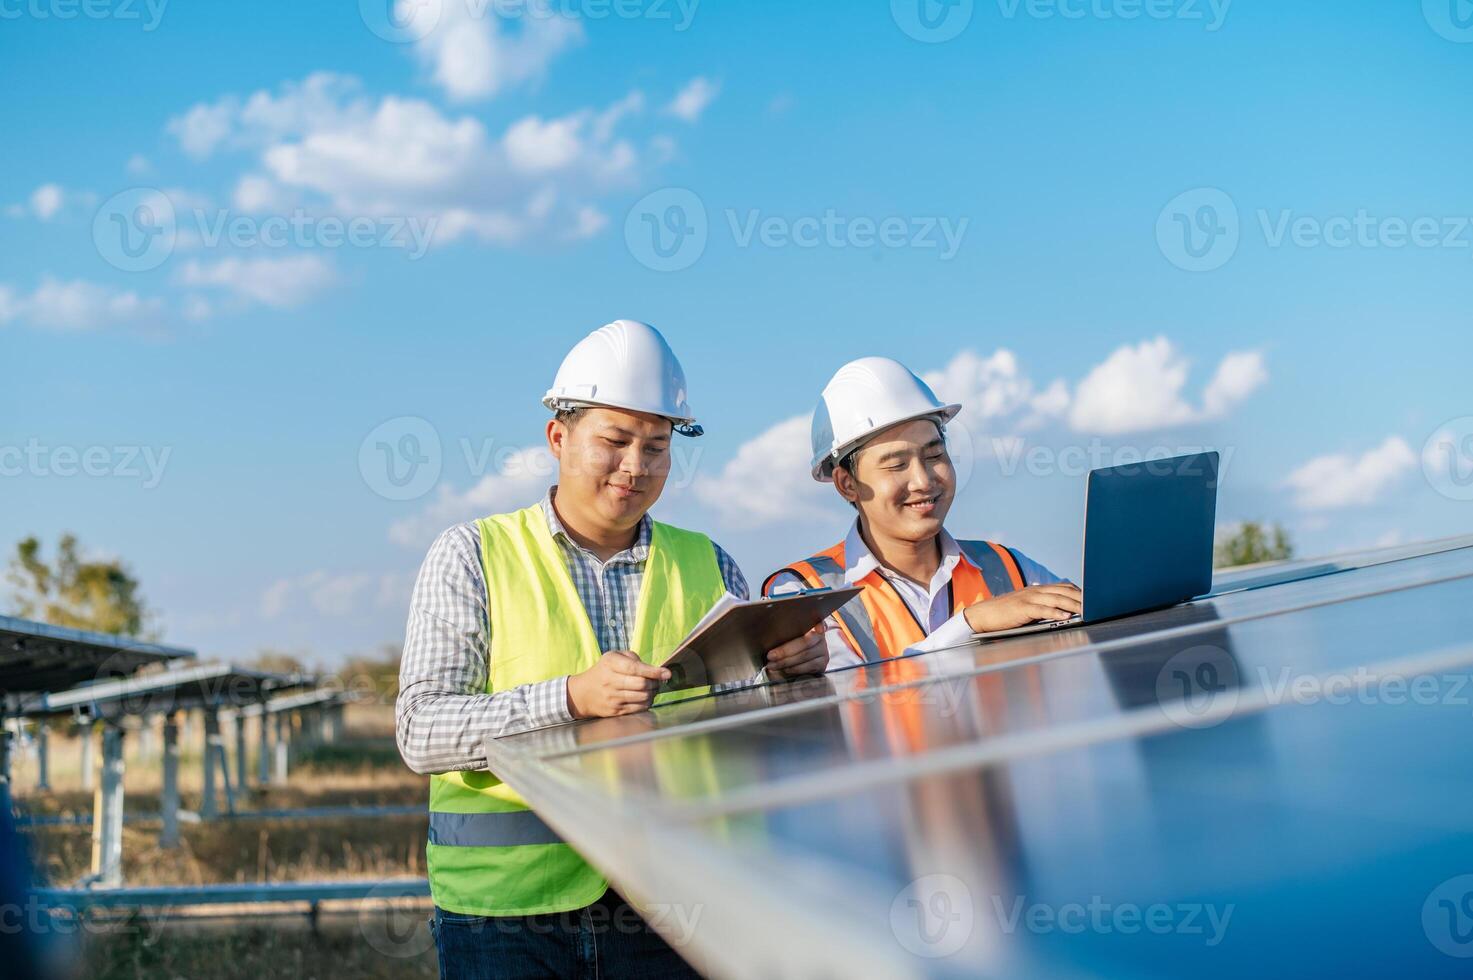 deux ingénieurs discutent pendant qu'ils travaillent dans une ferme solaire photo